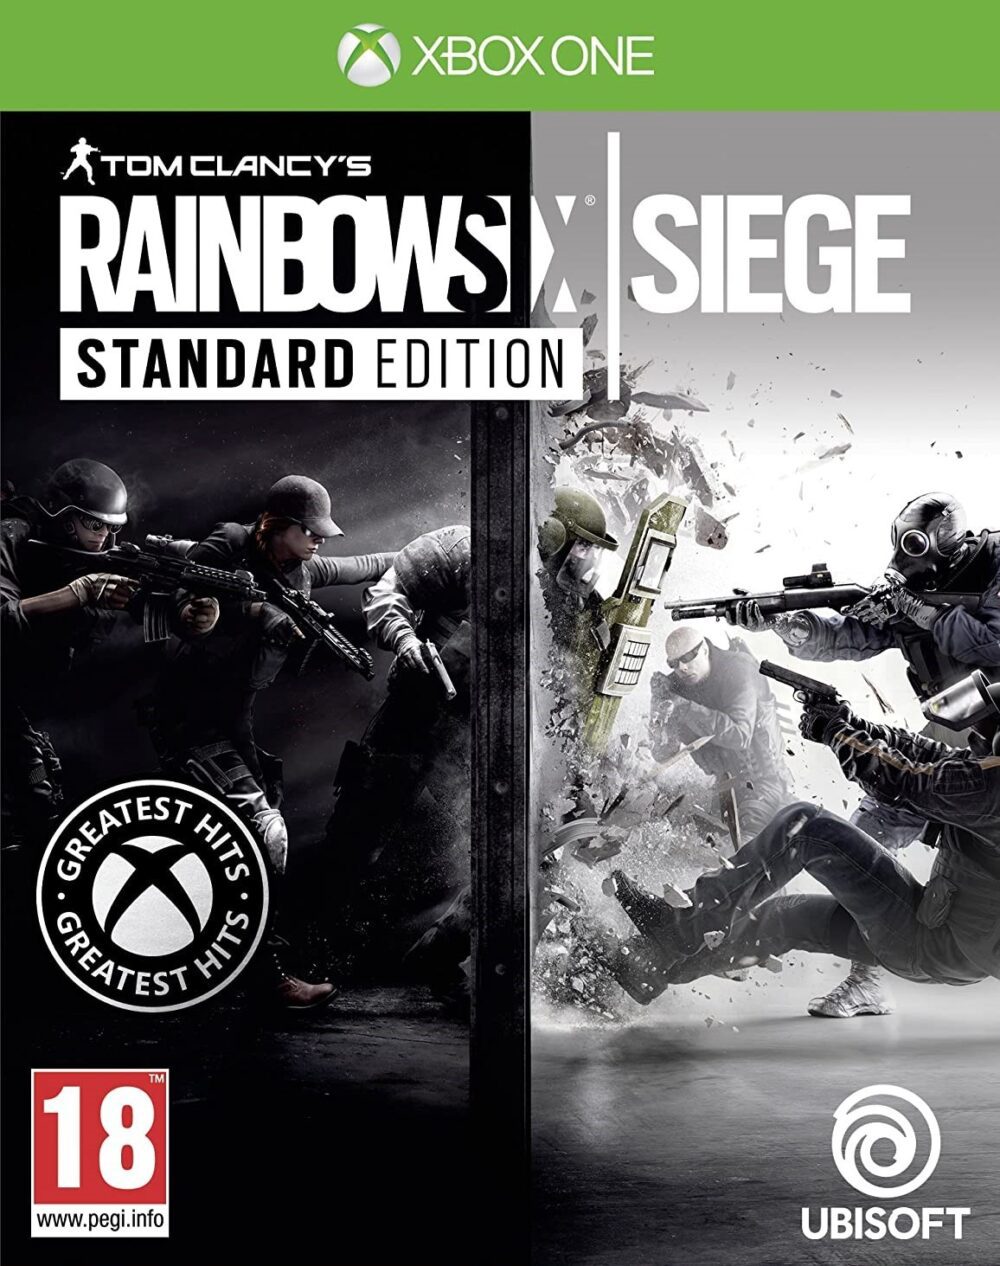 Tom Clancy's Rainbow Six Siege (Standard Edition) for Xbox One